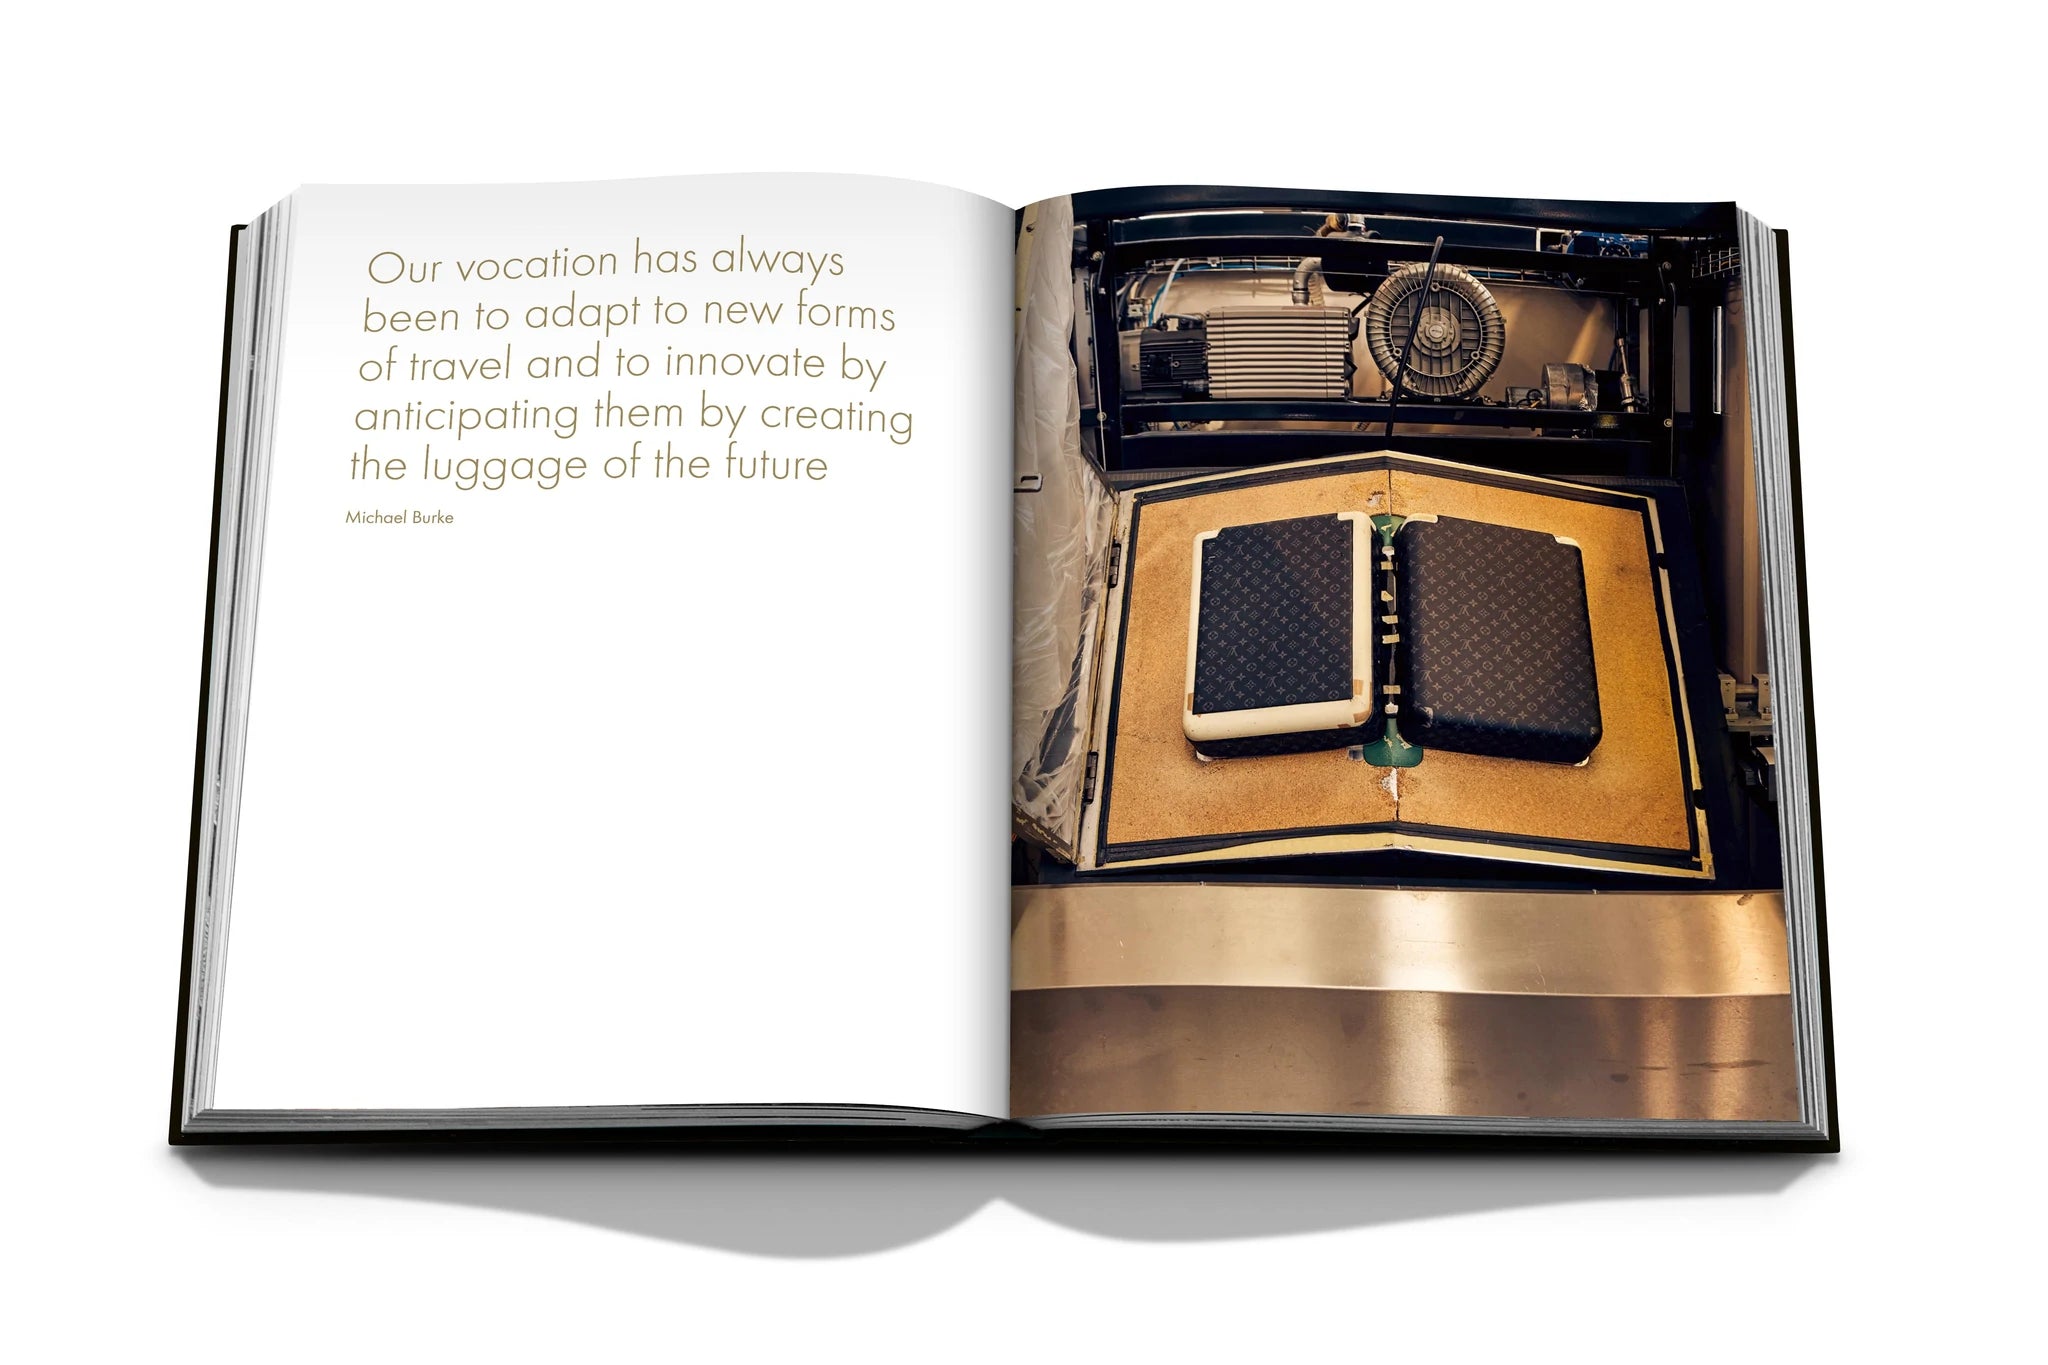 Louis Vuitton Saint Michel Review + Styling Ideas! 